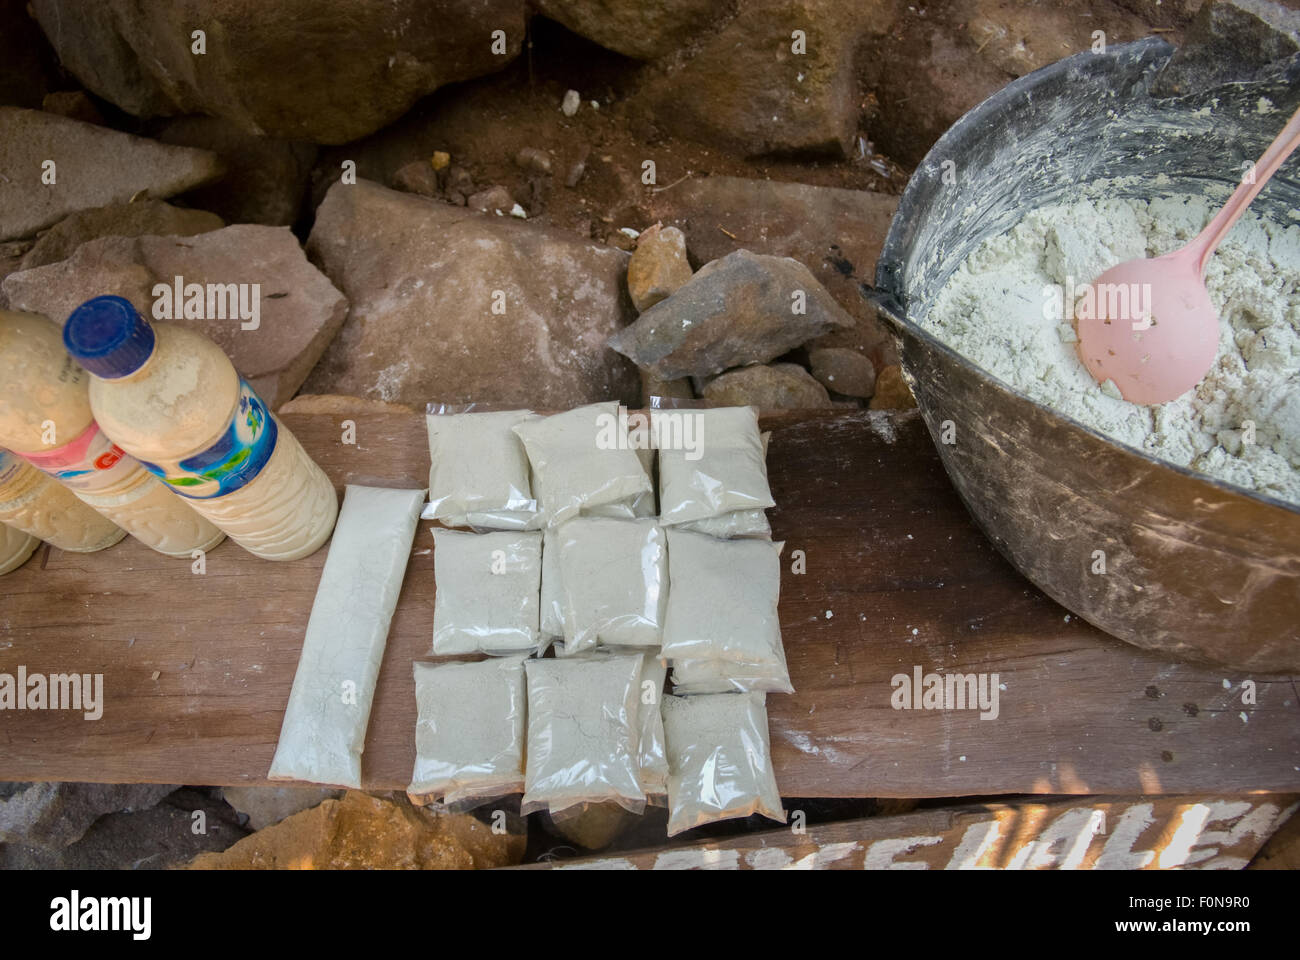 Pakete mit Schwefelpulver, von denen angenommen wird, dass es heilende Wirkungen auf die Hautpflege hat, werden in einem Geschäft in der Nähe einer heißen Quelle in Lampung, Indonesien, verkauft. Stockfoto